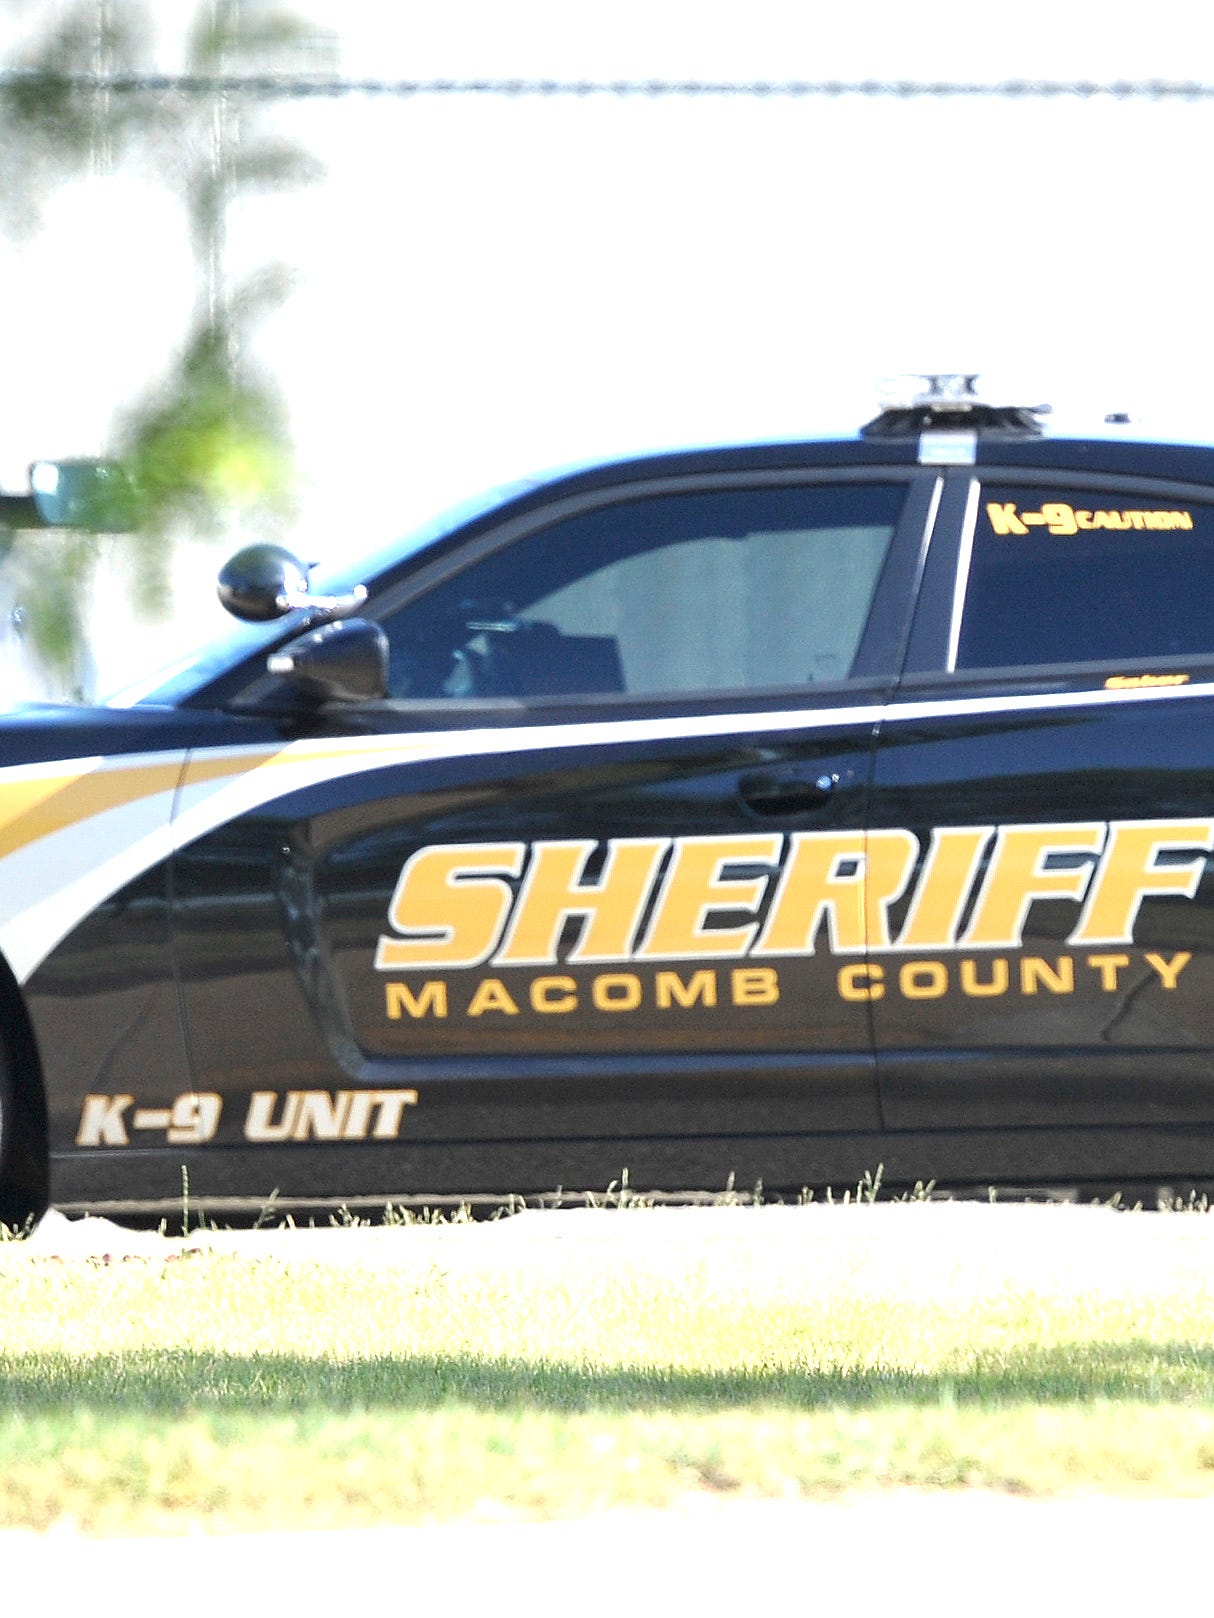 Macomb County Sheriff vehicle